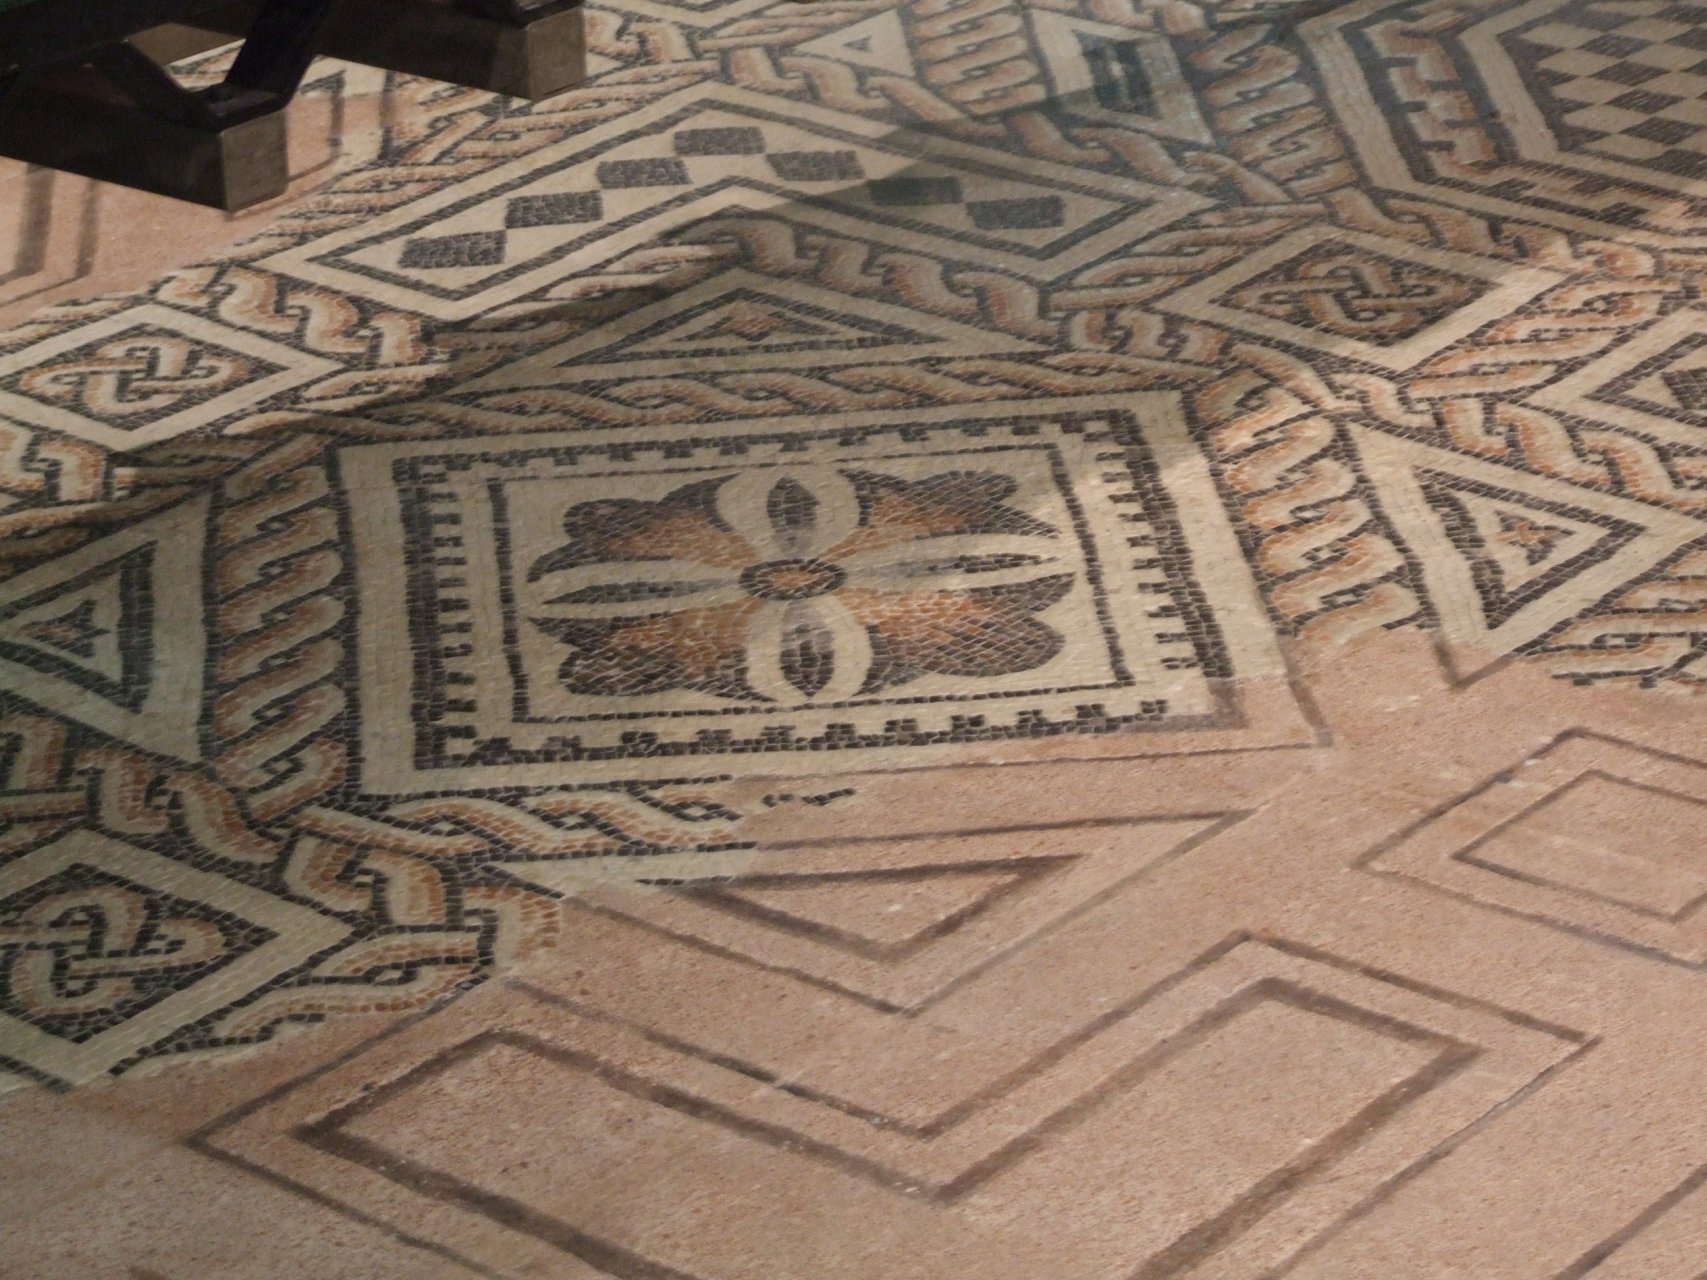 W muzeum archeologicznym zgromadzono pokaźną kolekcję mozaik podłogowych